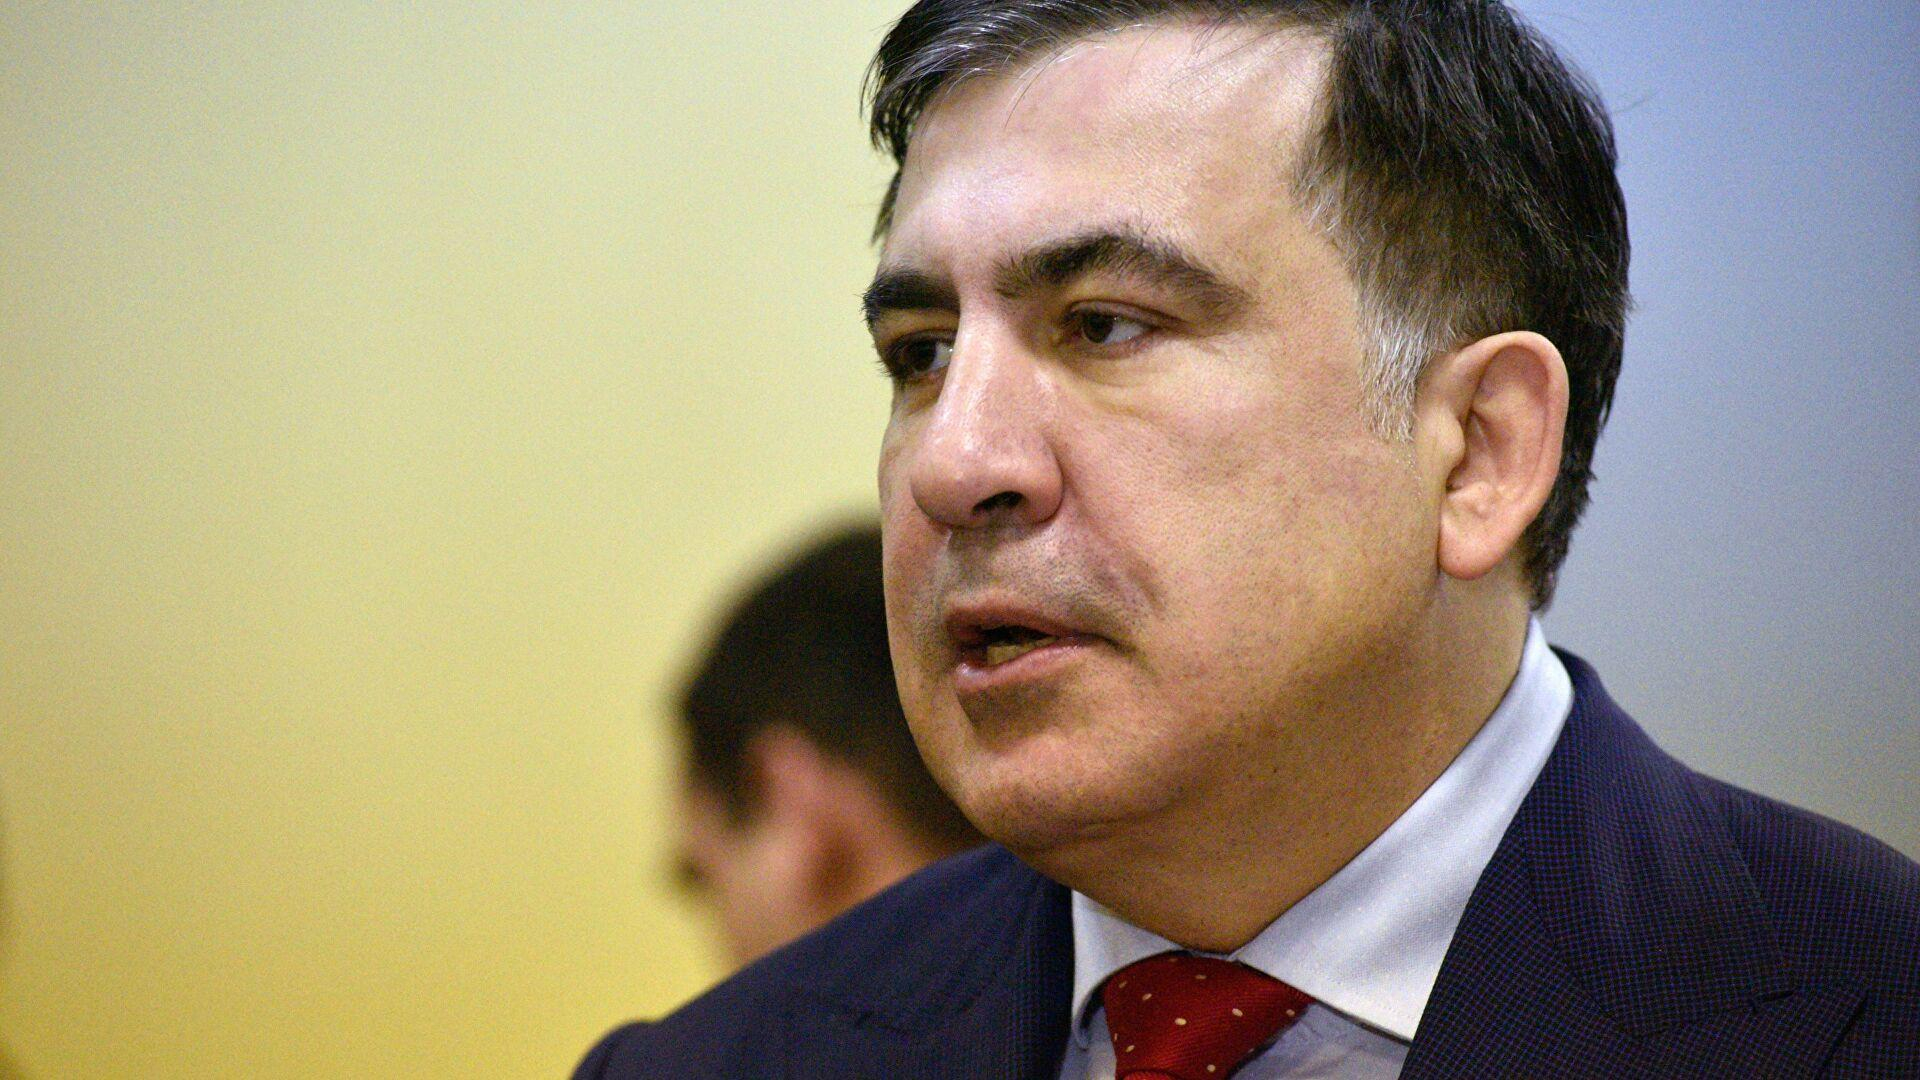 "Ослаб, тяжело стоять и говорить": состояние здоровья Саакашвили оценит психиатр